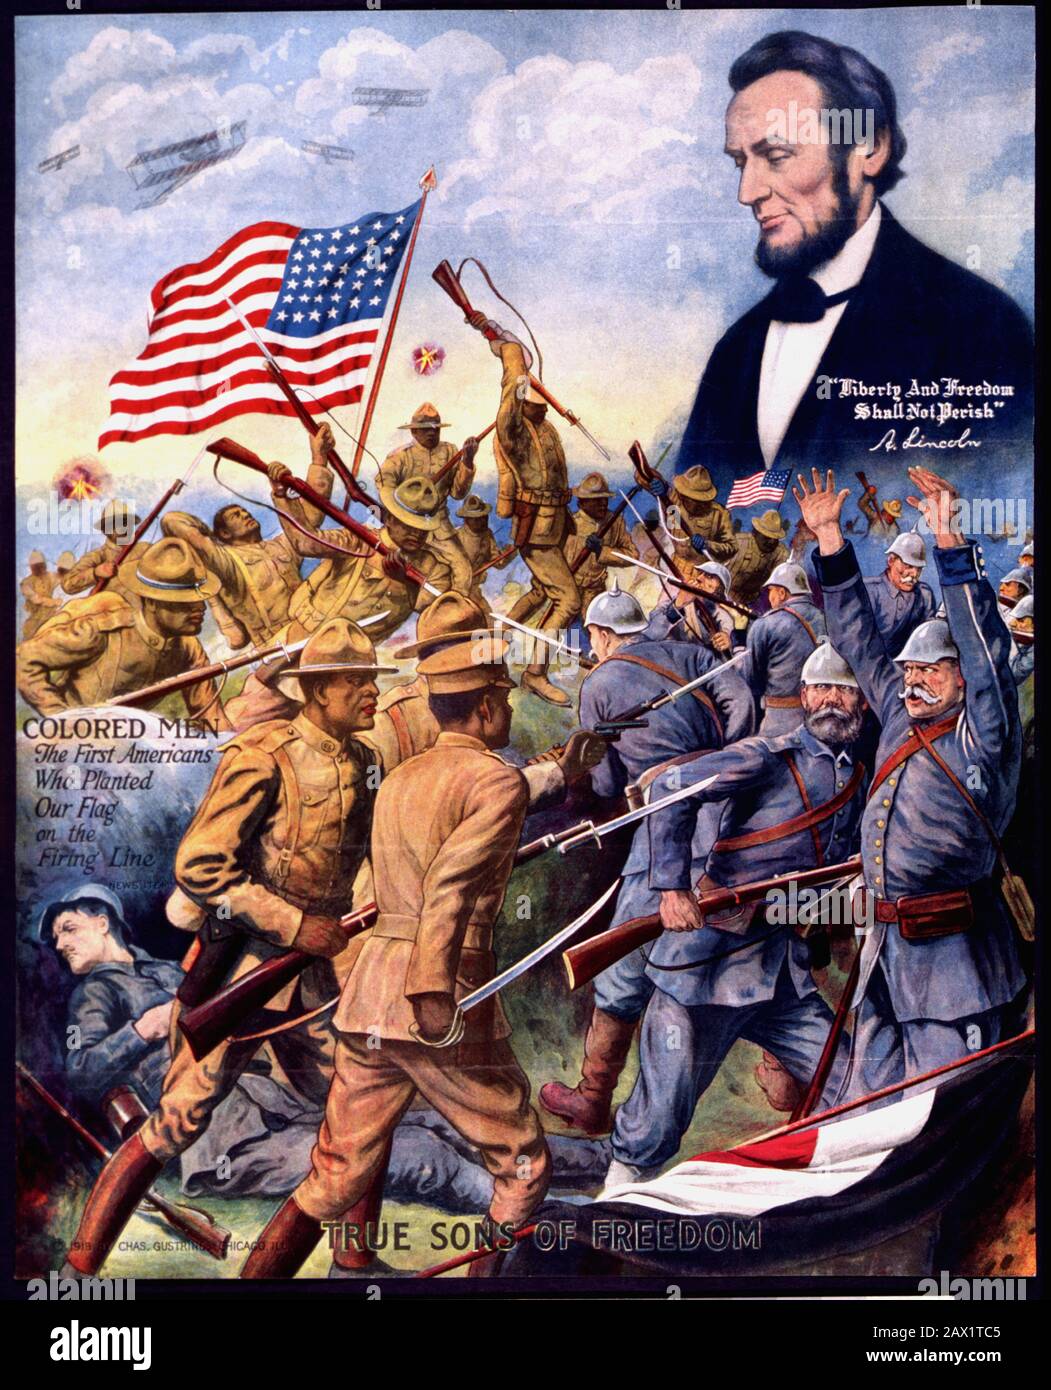 1918 , USA : GROSSES KRIEGS-PROPAGANDA-offizielles Plakat 1918 mit afroamerikanischen Soldaten, die deutsche Soldaten im ersten Weltkrieg bekämpfen, und Kopf-und-Schulter-Porträt von Abraham Lincoln oben. Der Präsident der USA, ABRAHAM LINCOLN (* 1809 in New York; † 1865 in New York). - PRIMA GUERRA MONDIALE - GRANDE GUERRA - GROSSER KRIEG - WWWI - Presidente della Repubblica - Stati Uniti - USA - Ritratto - Porträt - Cravatta - Krawatte - papillon - Kragen - Colletto - Abramo - Fahne - Bandiera - patriota - patriottismo - EMANCIPAZIONE NERI D' AMERICA ---- ARCHIVIO GBB Stockfoto